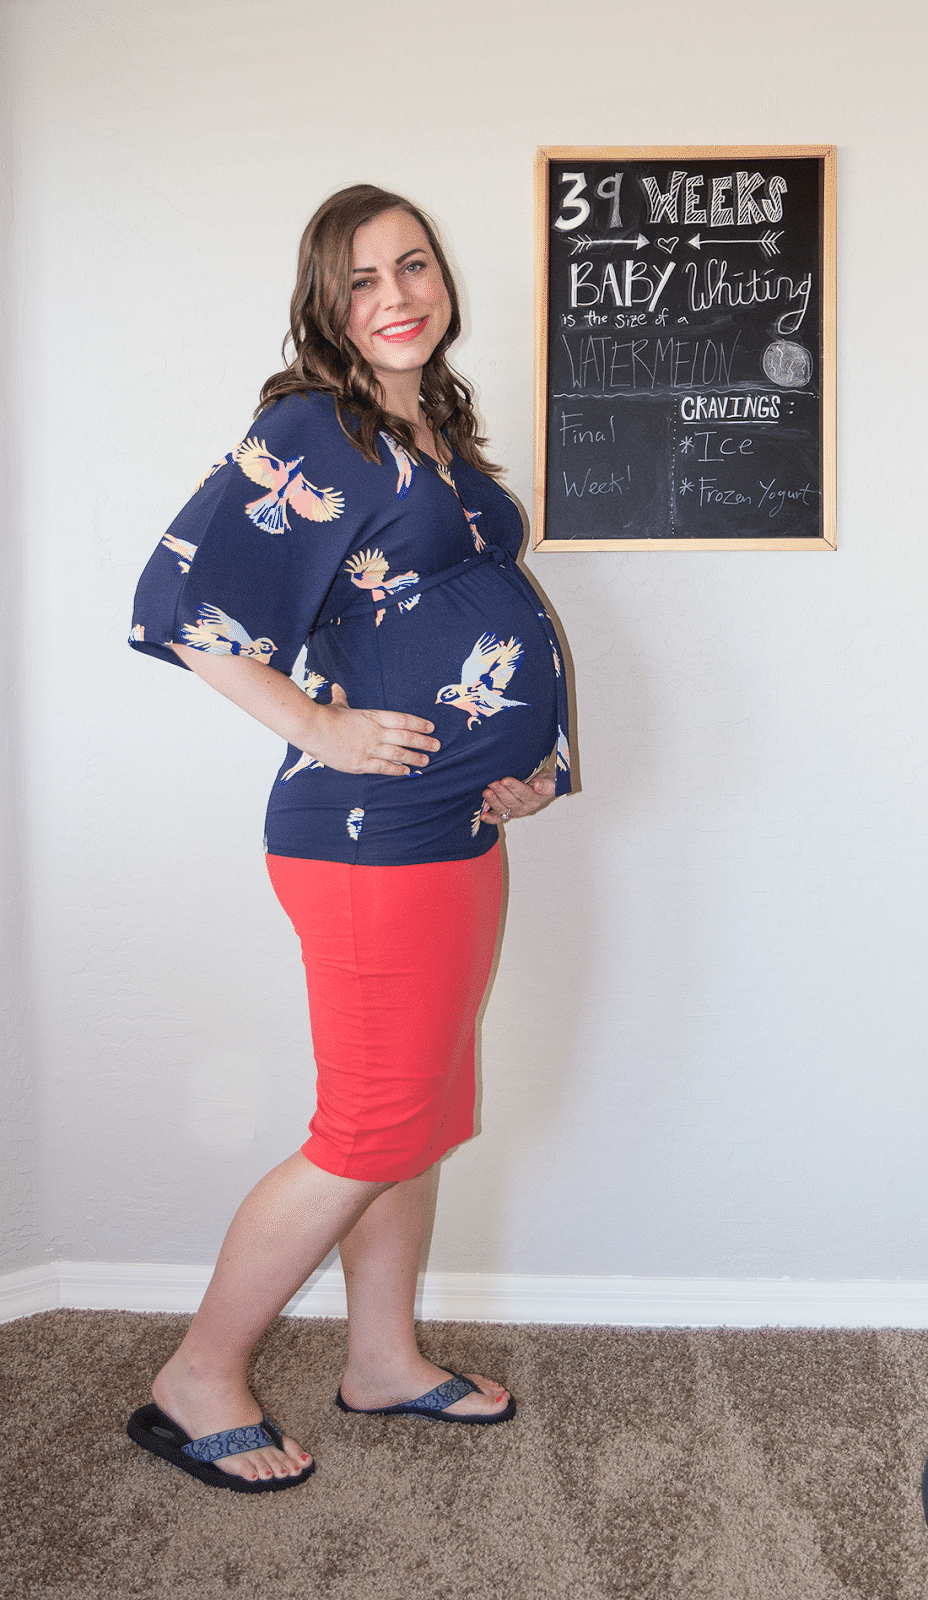 Pregnancy Update: 39 Weeks